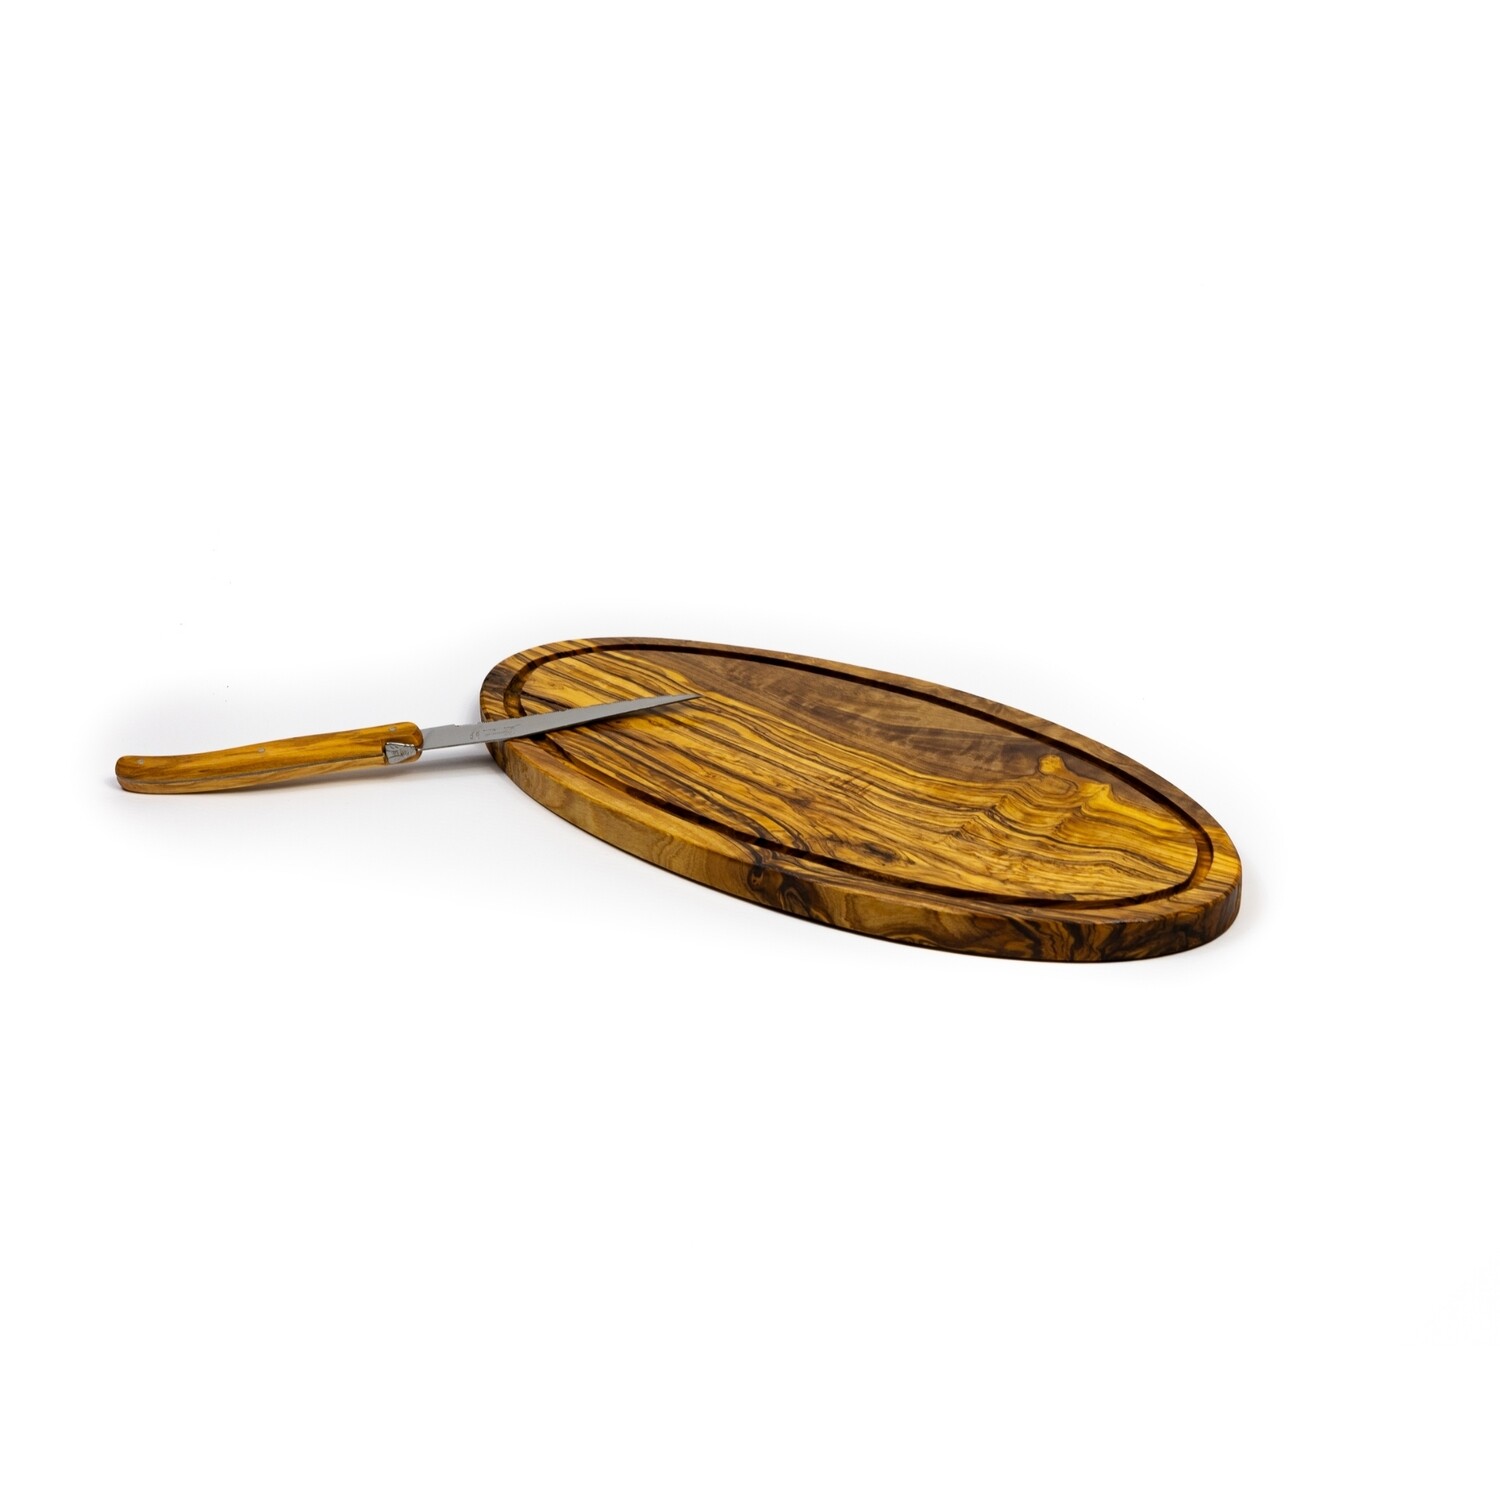 Planche Charcuterie & Fromage moderne format Ovale avec sont Couteau à Fromage Laguile en bois d'olivier artisanale sans aucun traitement